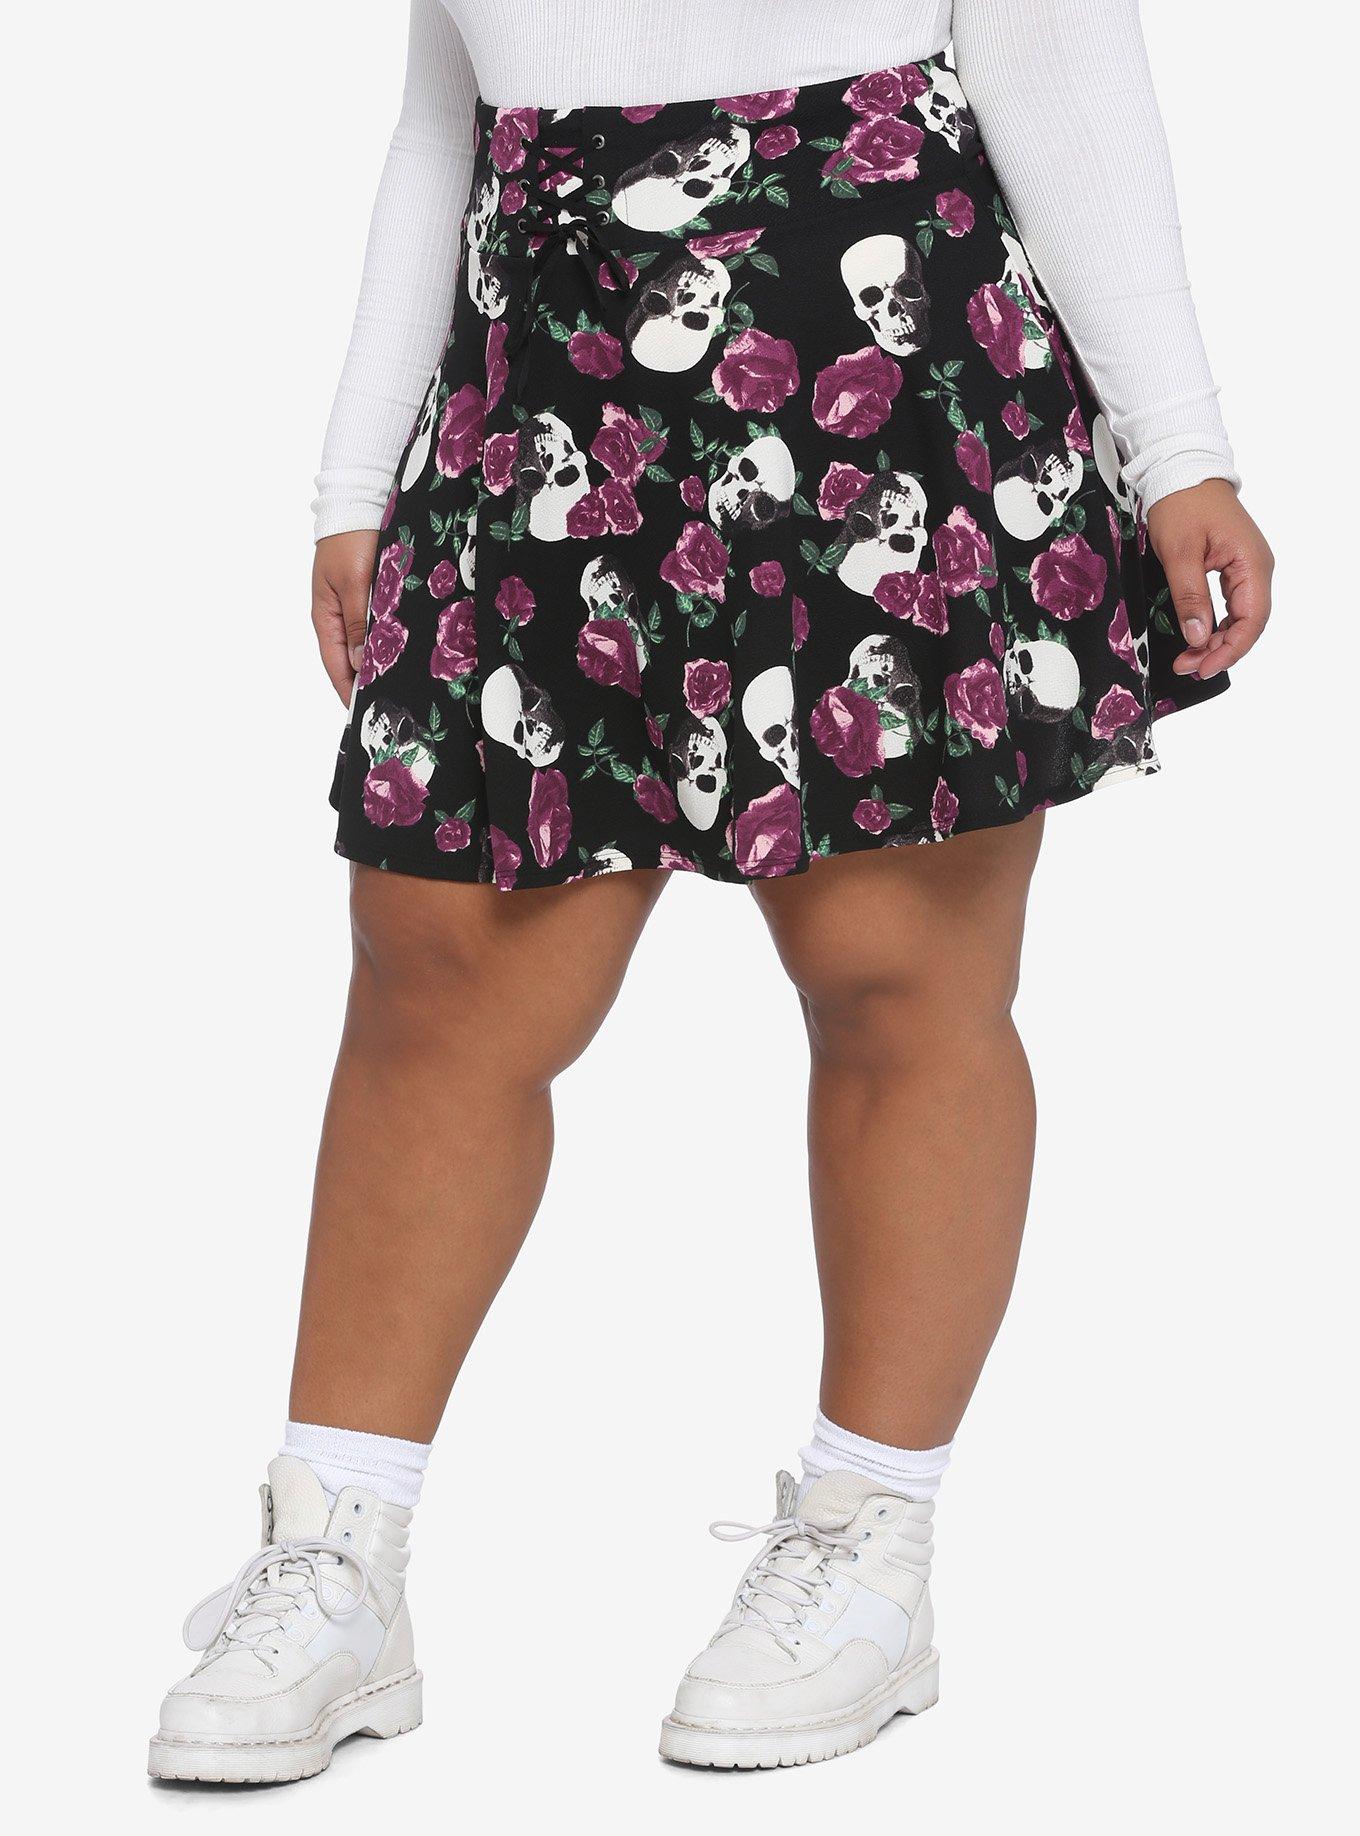 Purple Roses & Skulls Lace-Up Skater Skirt Plus Size, MULTI, hi-res